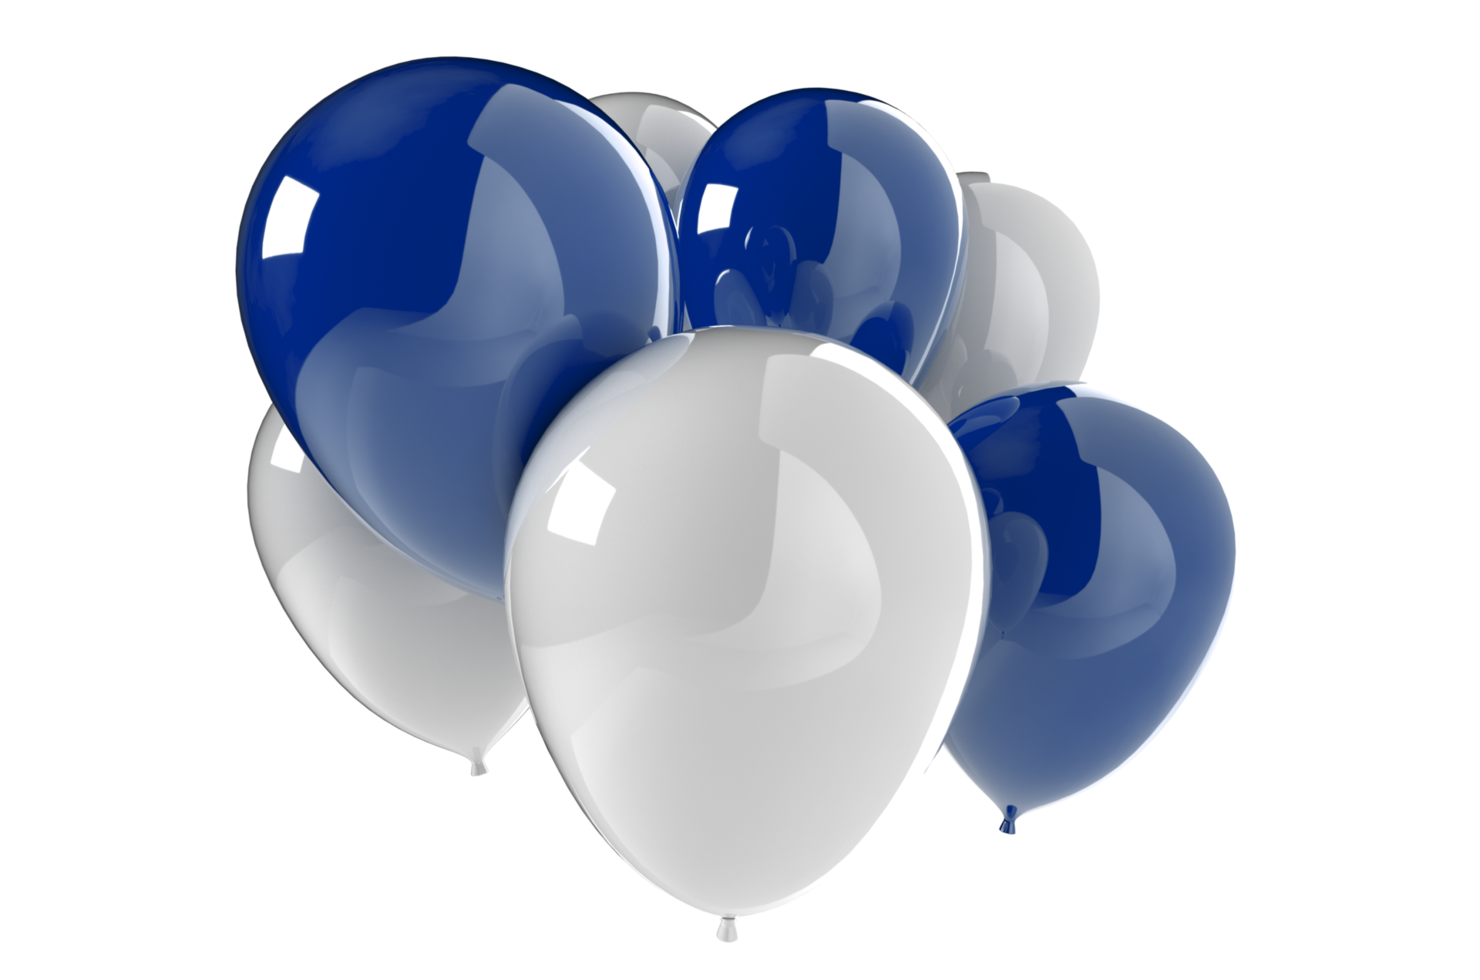 ballonger 3d framställa illustration för firande eller födelsedag fest png